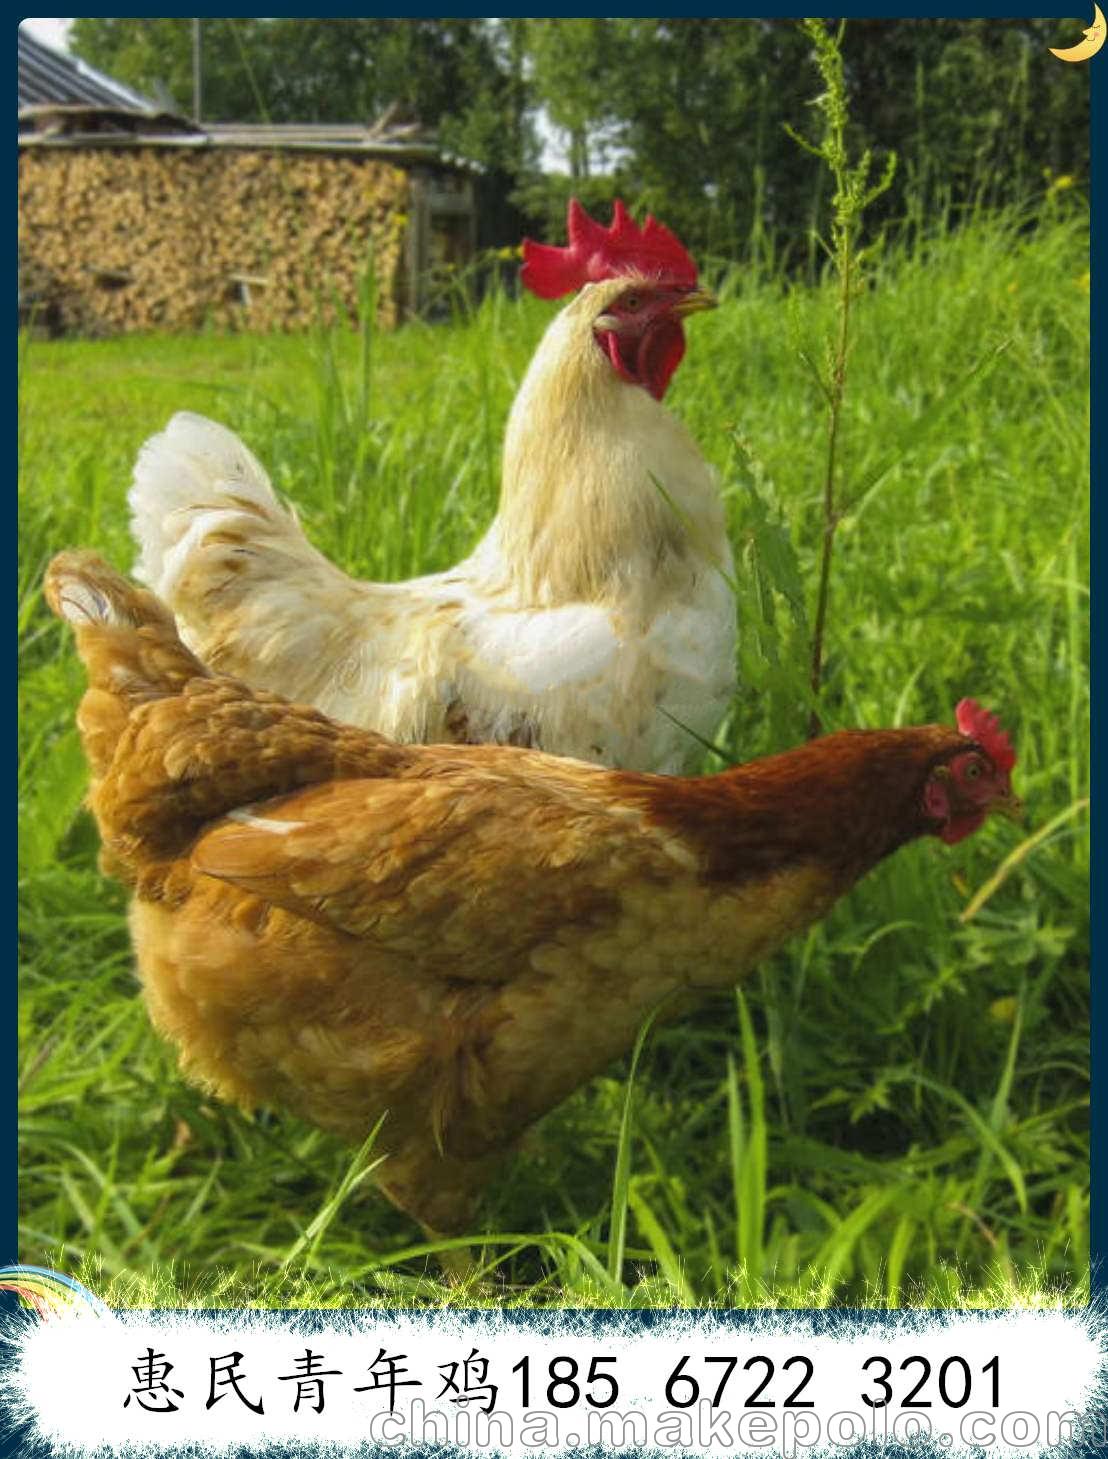 江西罗曼粉青年鸡70日龄报价 罗曼粉青年鸡70日龄体重